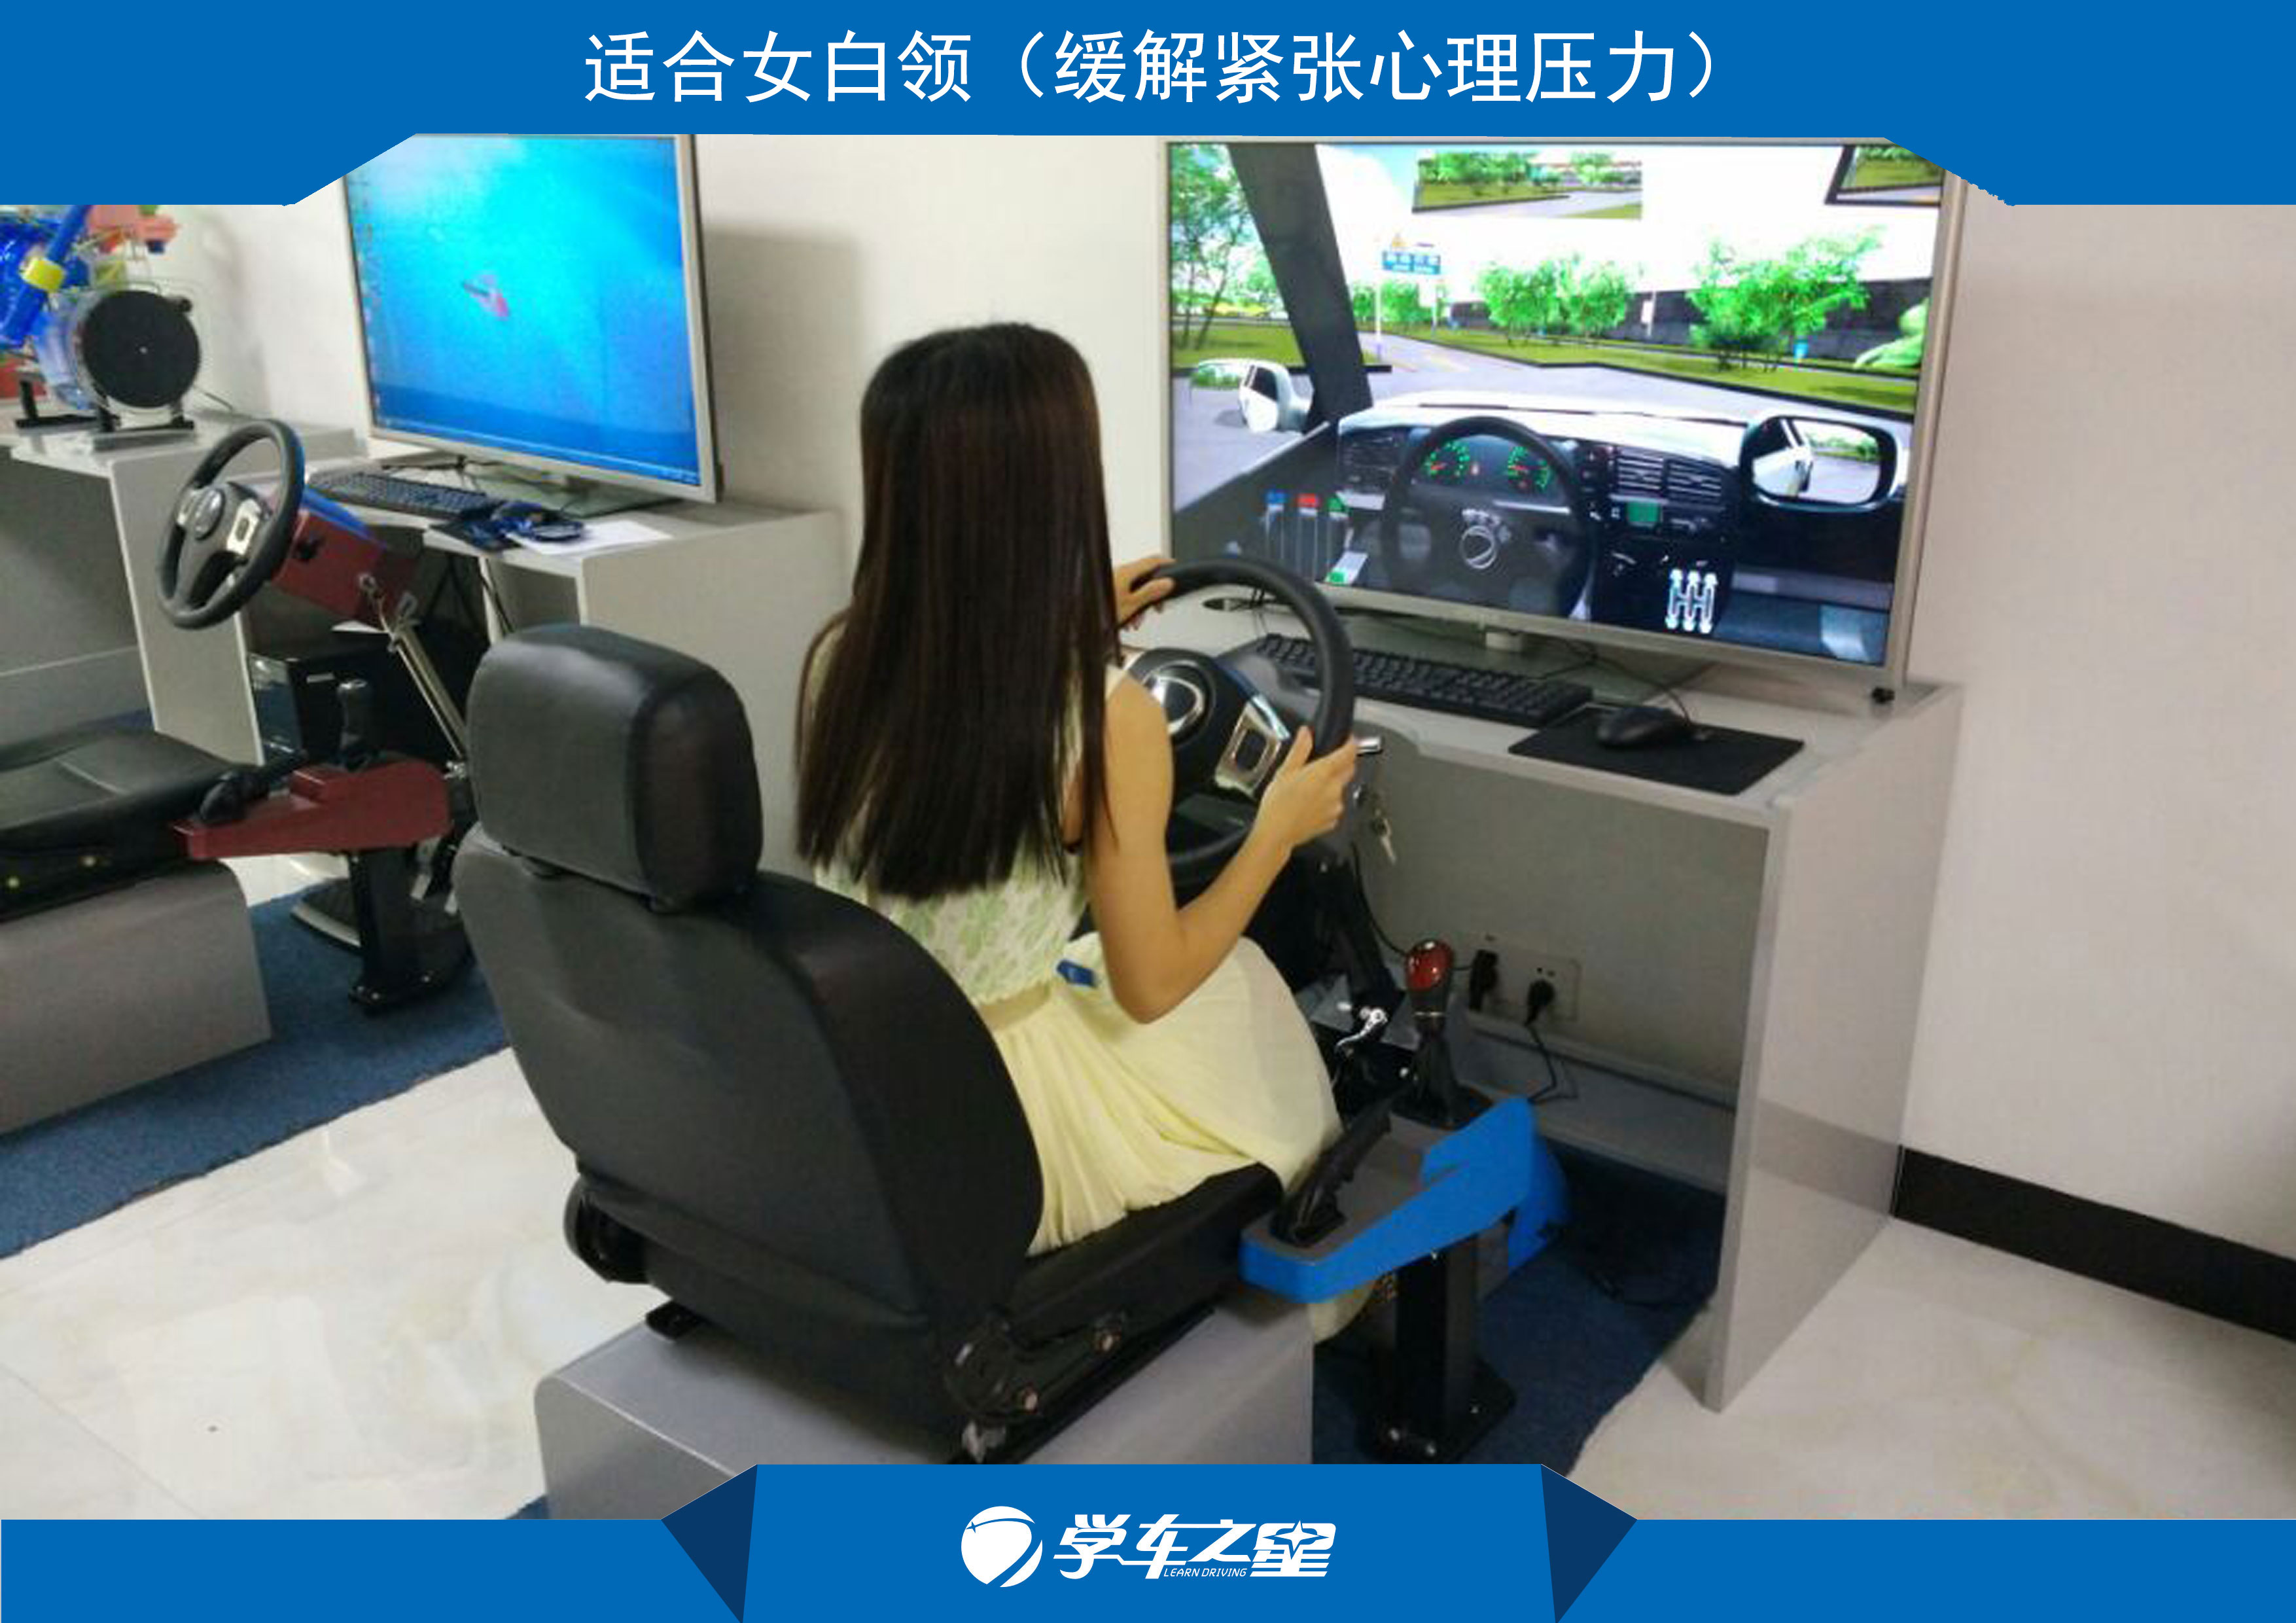 学员坐上座椅后,可以通过电脑显示屏选择需要练习的项目进行操作，让学员在室内也可以轻松学车